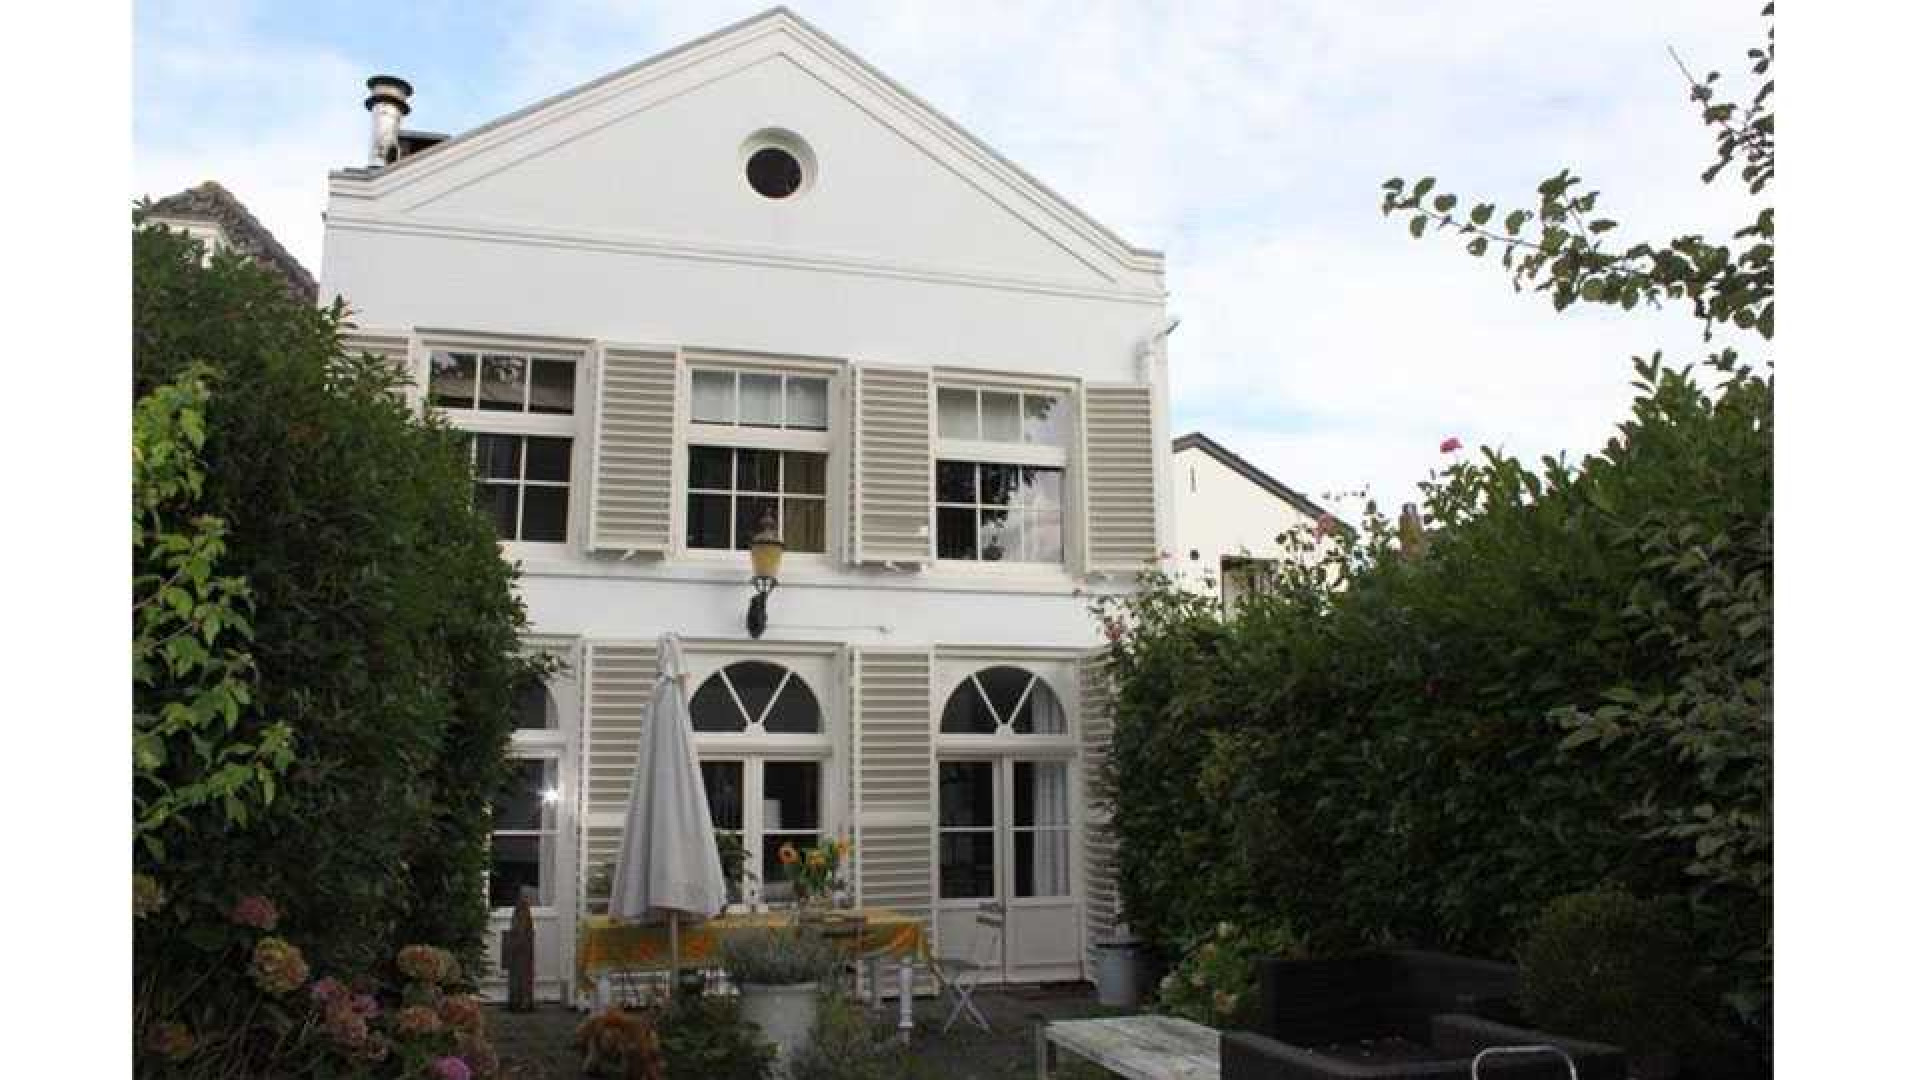 Huis Annemieke Verdoorn aan de Vecht verhuurd. Zie foto's 1